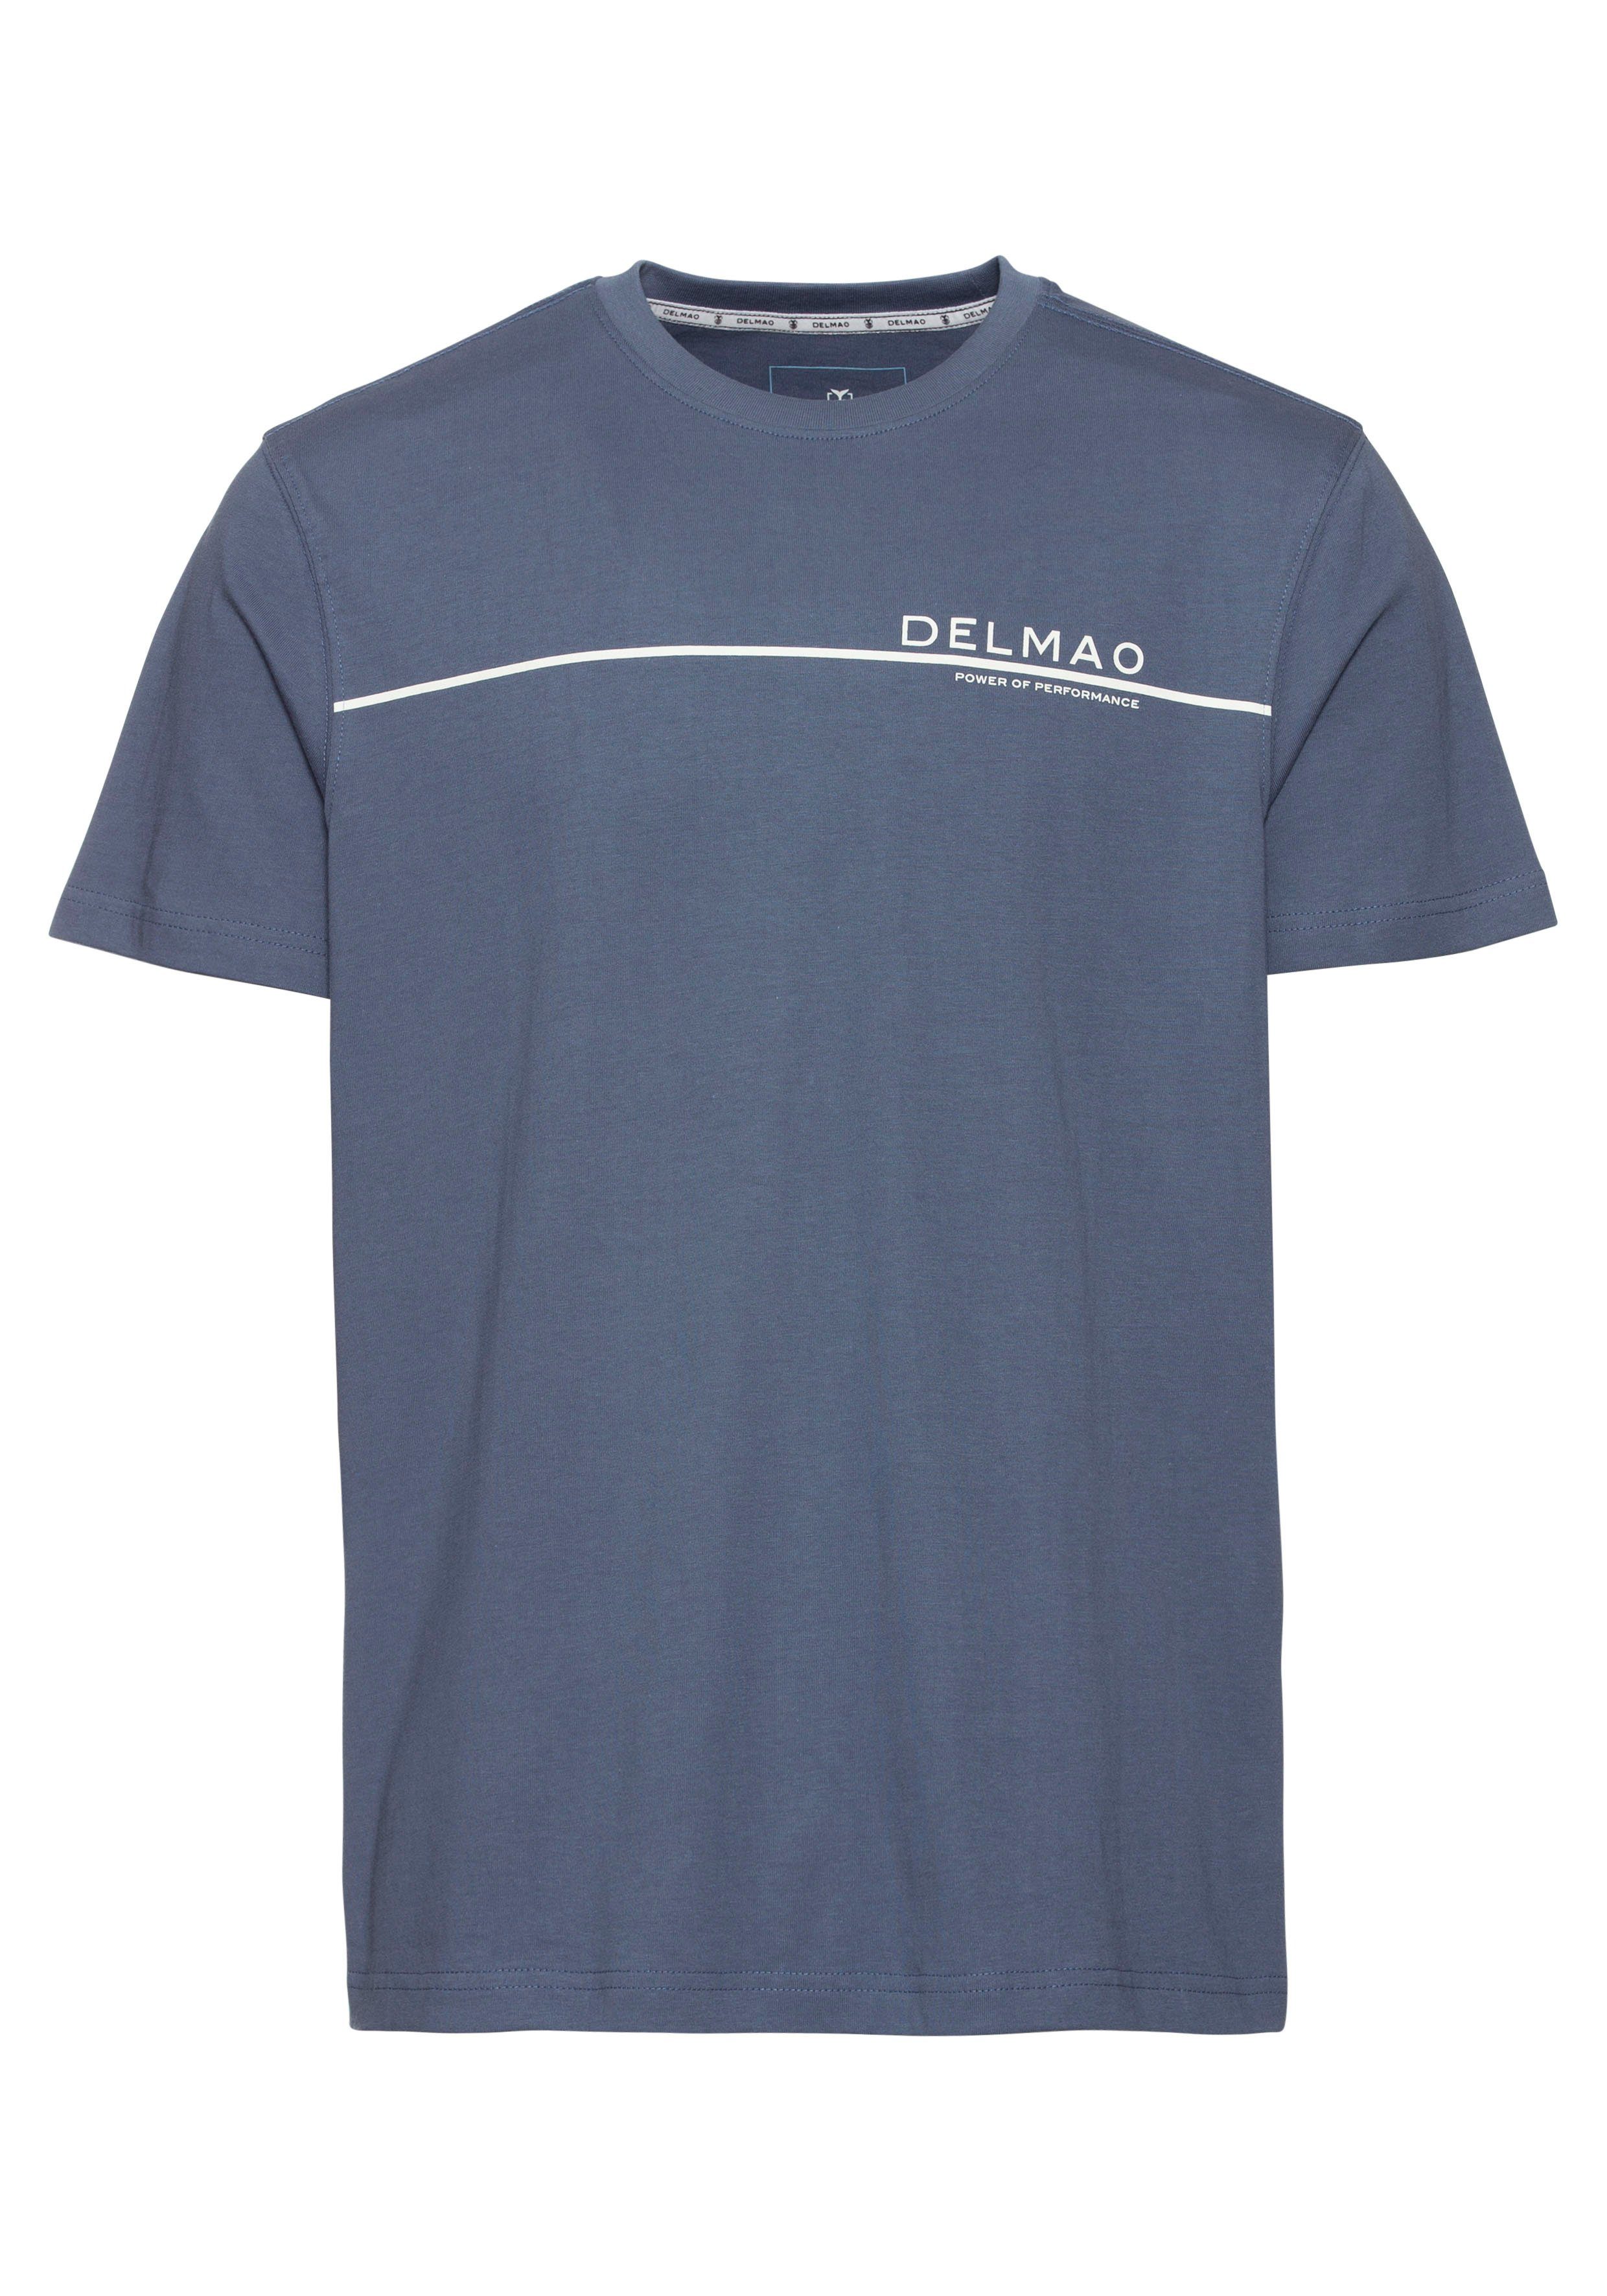 DELMAO T-Shirt mit modischem indigo NEUE Brustprint MARKE! blau 